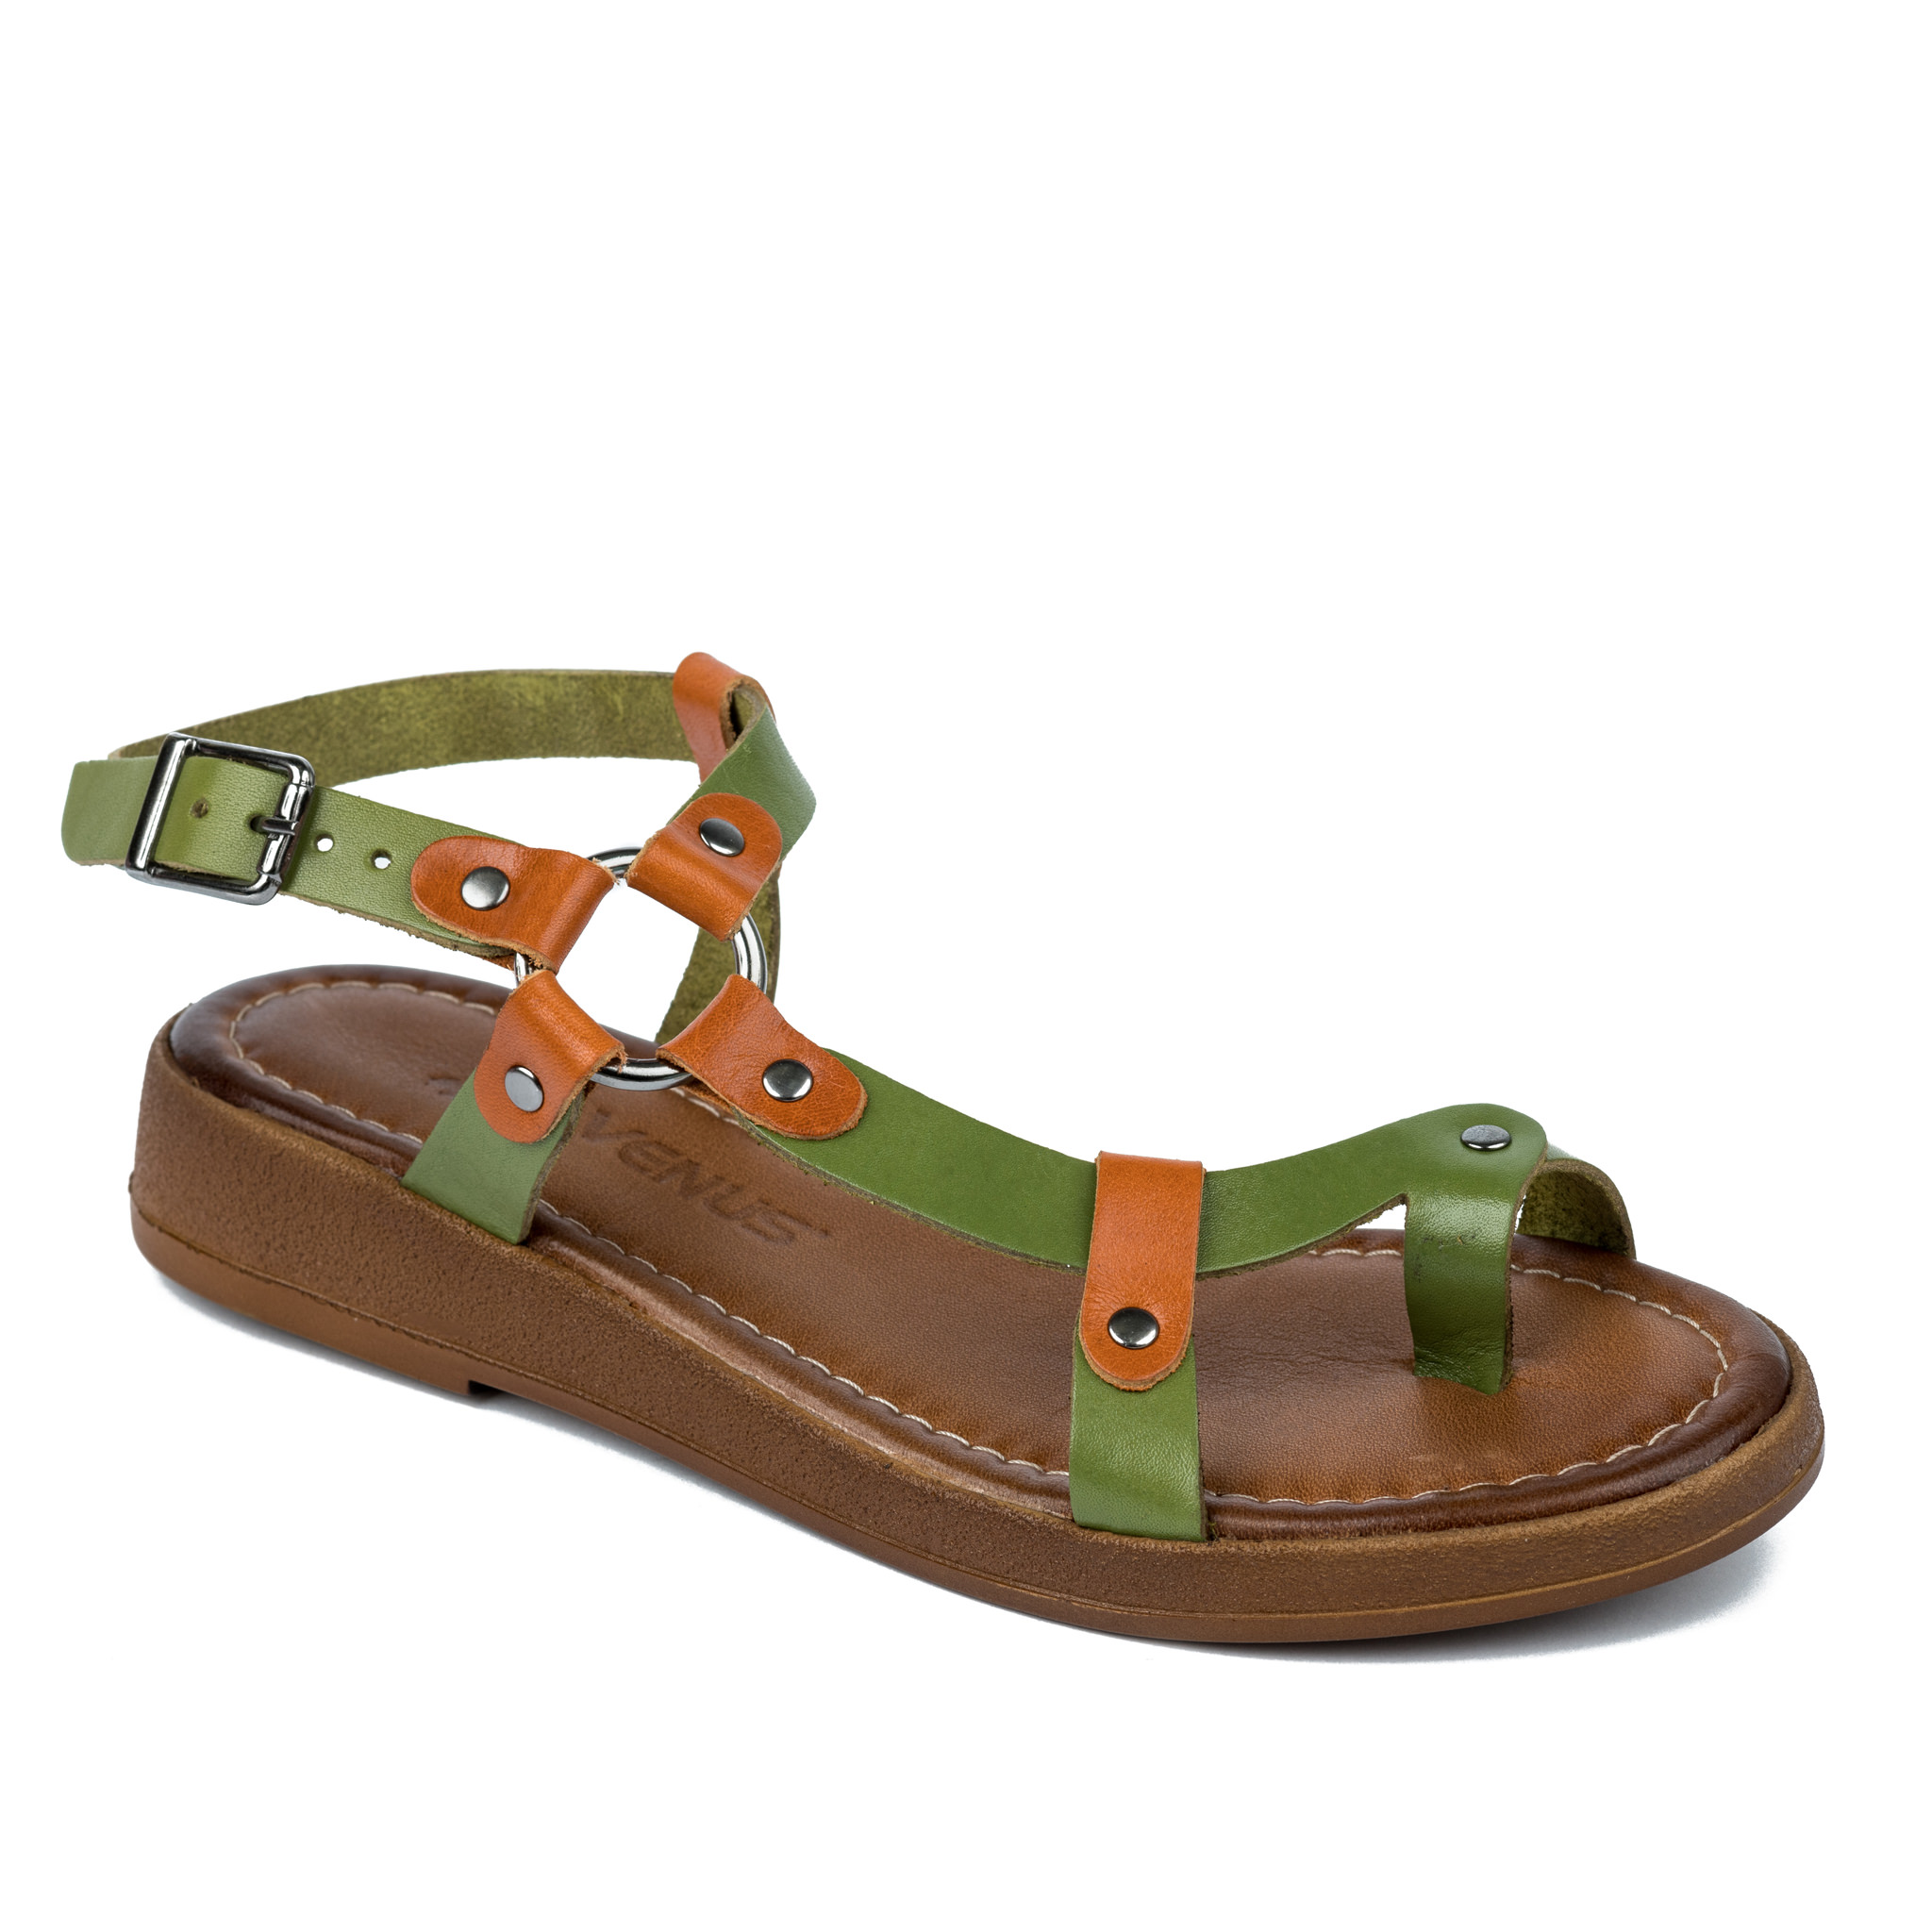 Women sandals A258 - GREEN